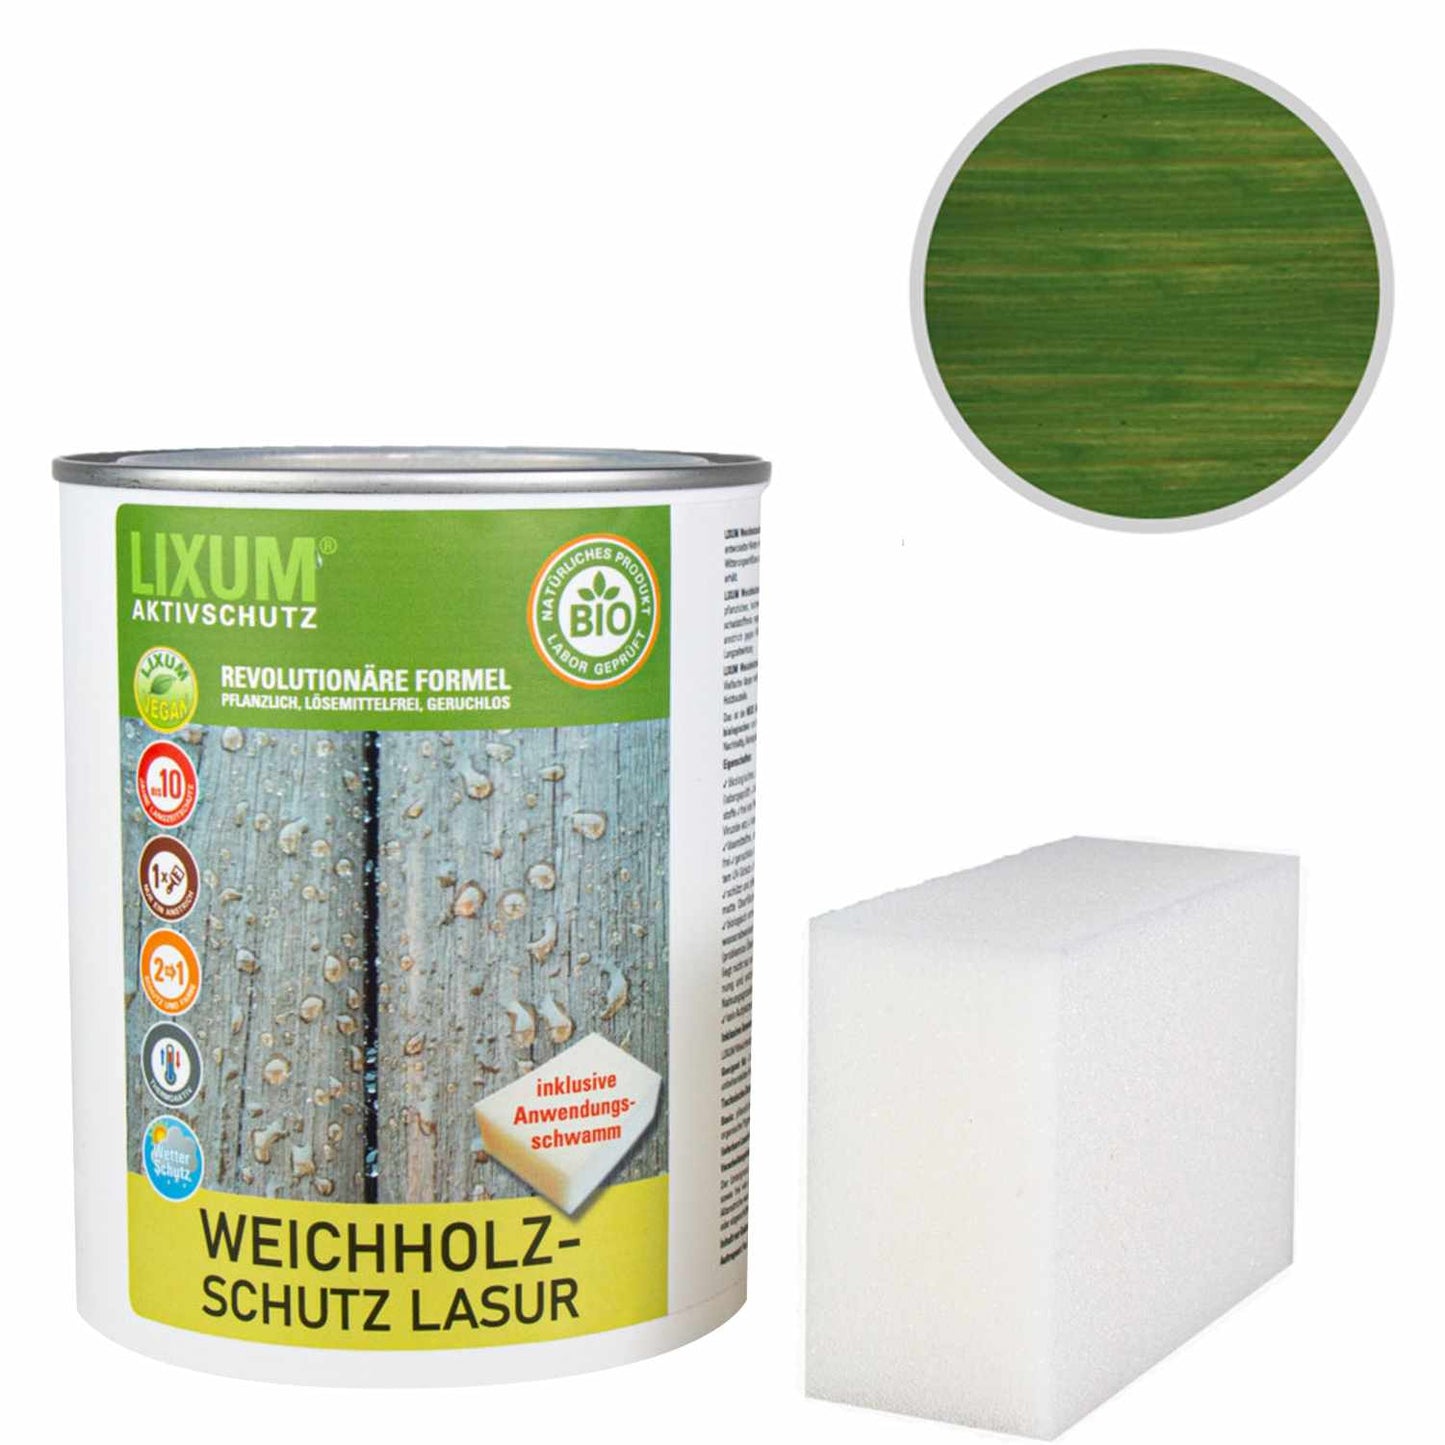 Glassa di protezione delle legno del legno biologico - larice - protezione del legno e cura del legno per l'esterno